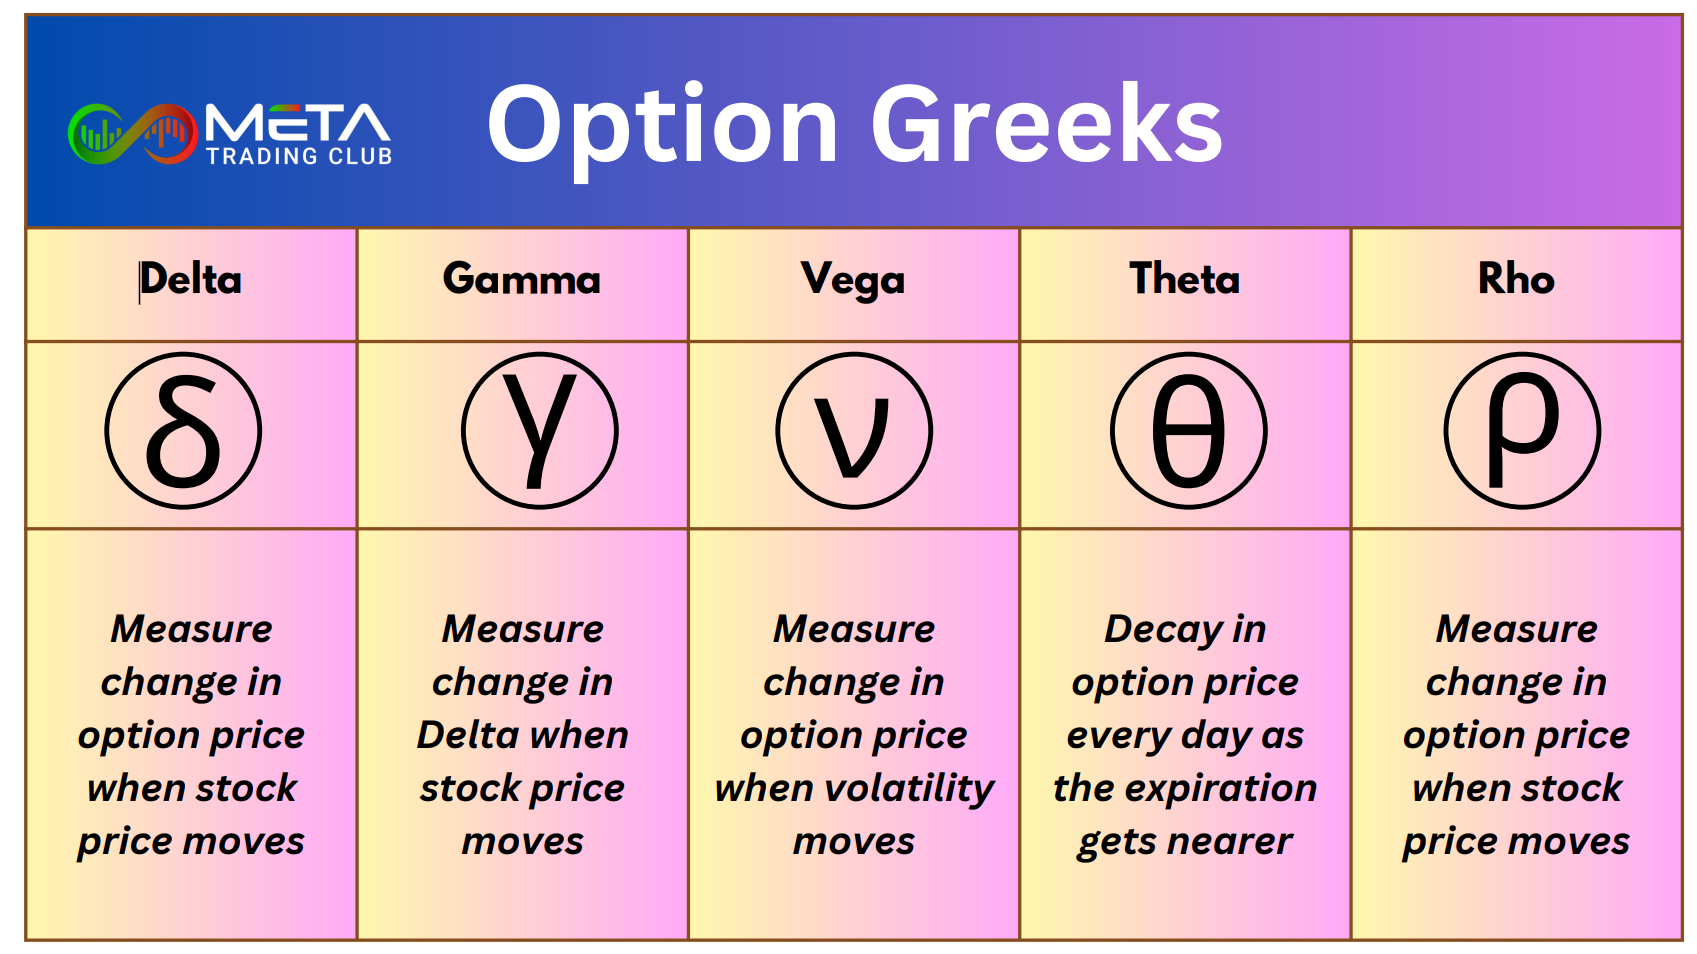 Option greeks